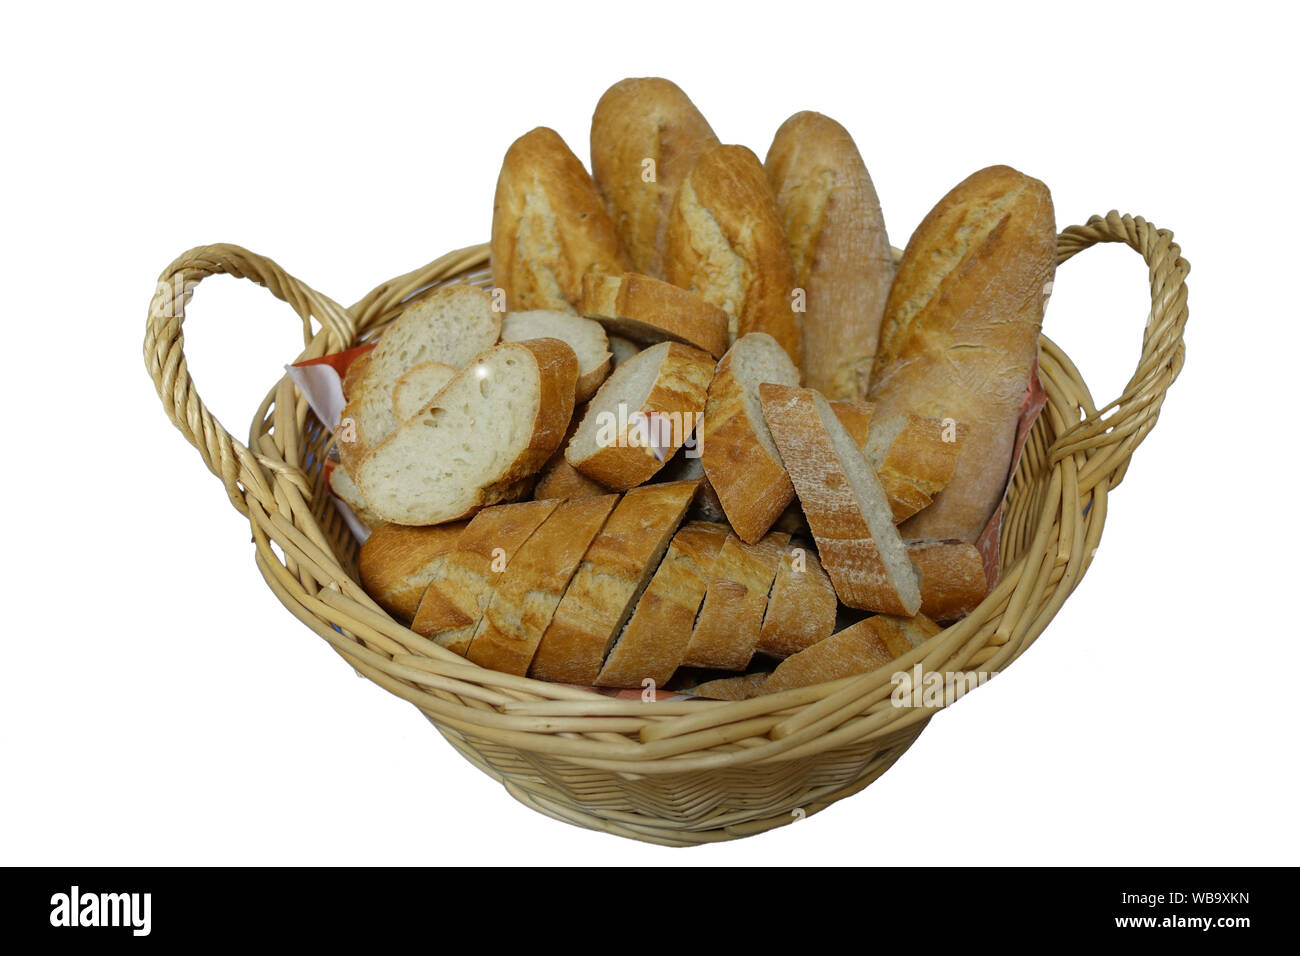 Weidenkorb mit geschnittenem Baguette-Brot auf weißem Hintergrund - Freisteller Foto Stock